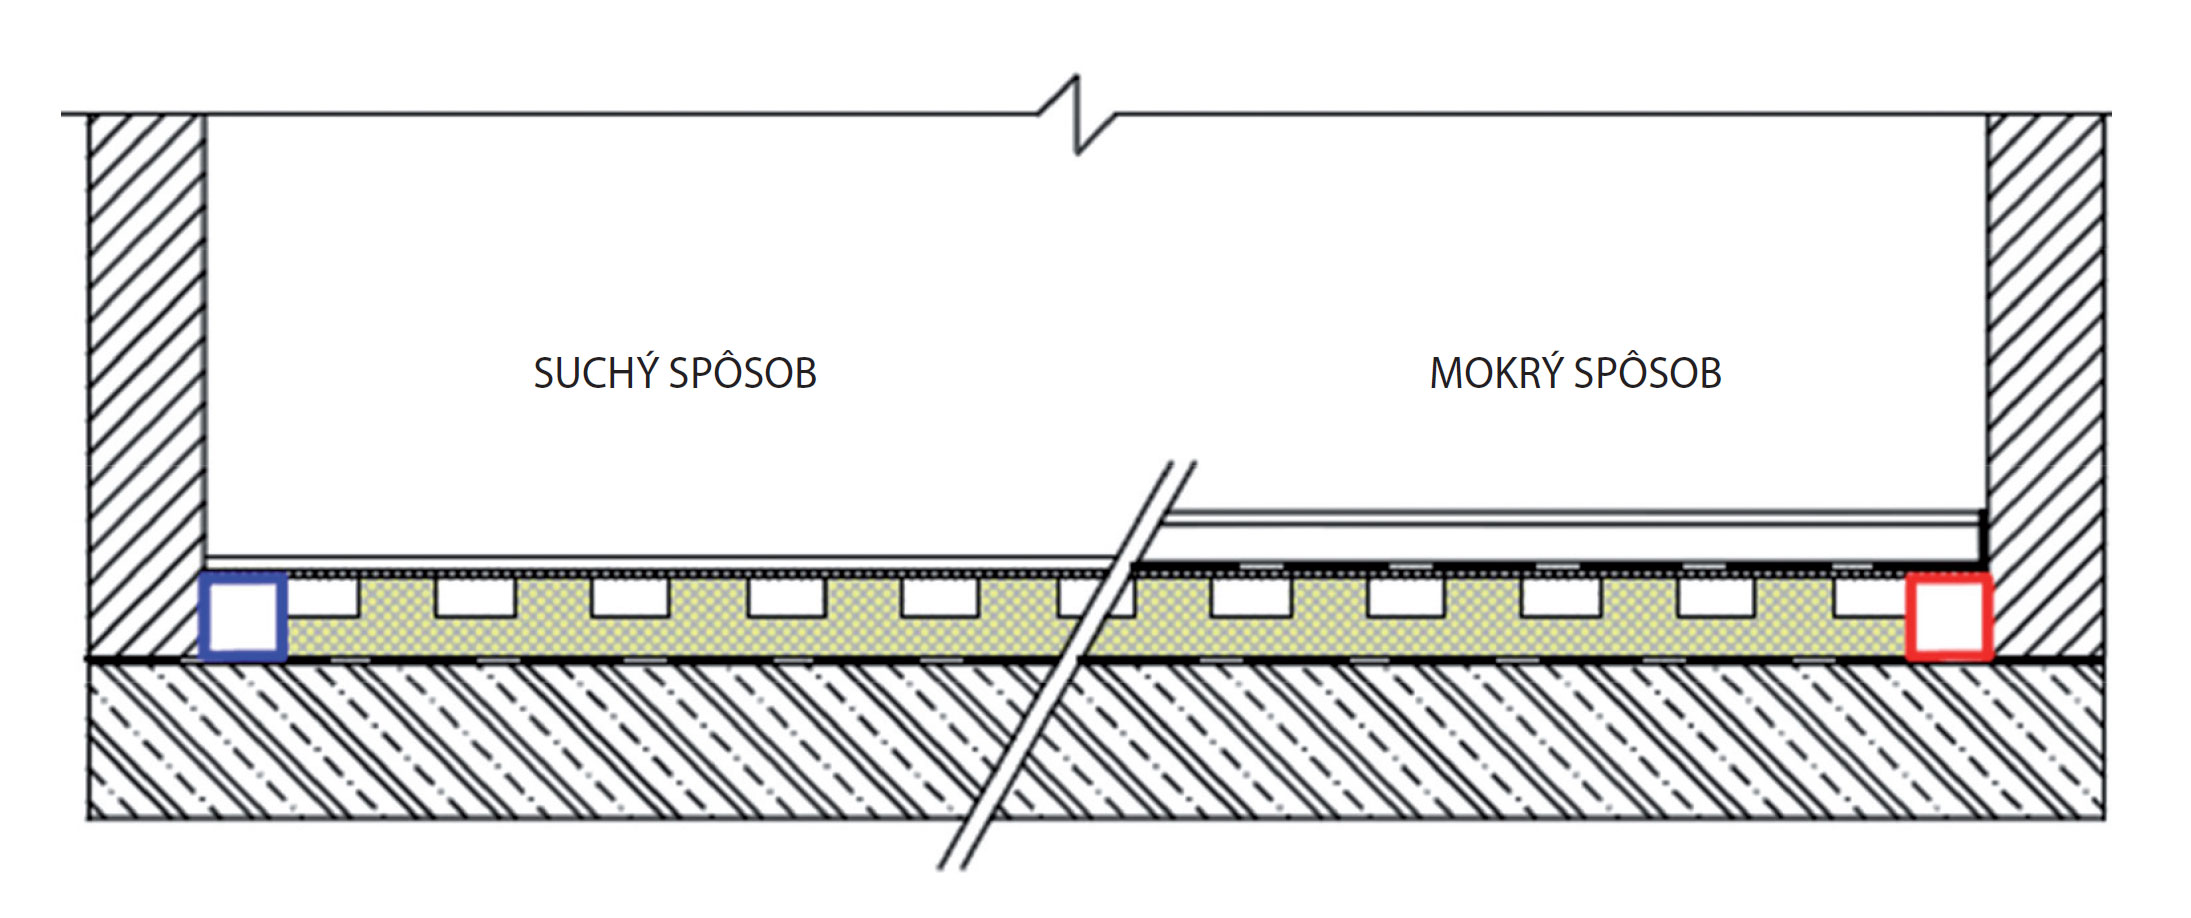 Obr. 13 Detail suchého a mokrého spôsobu vyhotovenia podlahového vykurovania pomocou ITAP panelov s integrovaným vzduchovým kanálom (panel je tvorený izolačnou doskou s kanálmi, je prekrytý a zlepený veľkoplošnou doskou, napr. sadrokartónom)